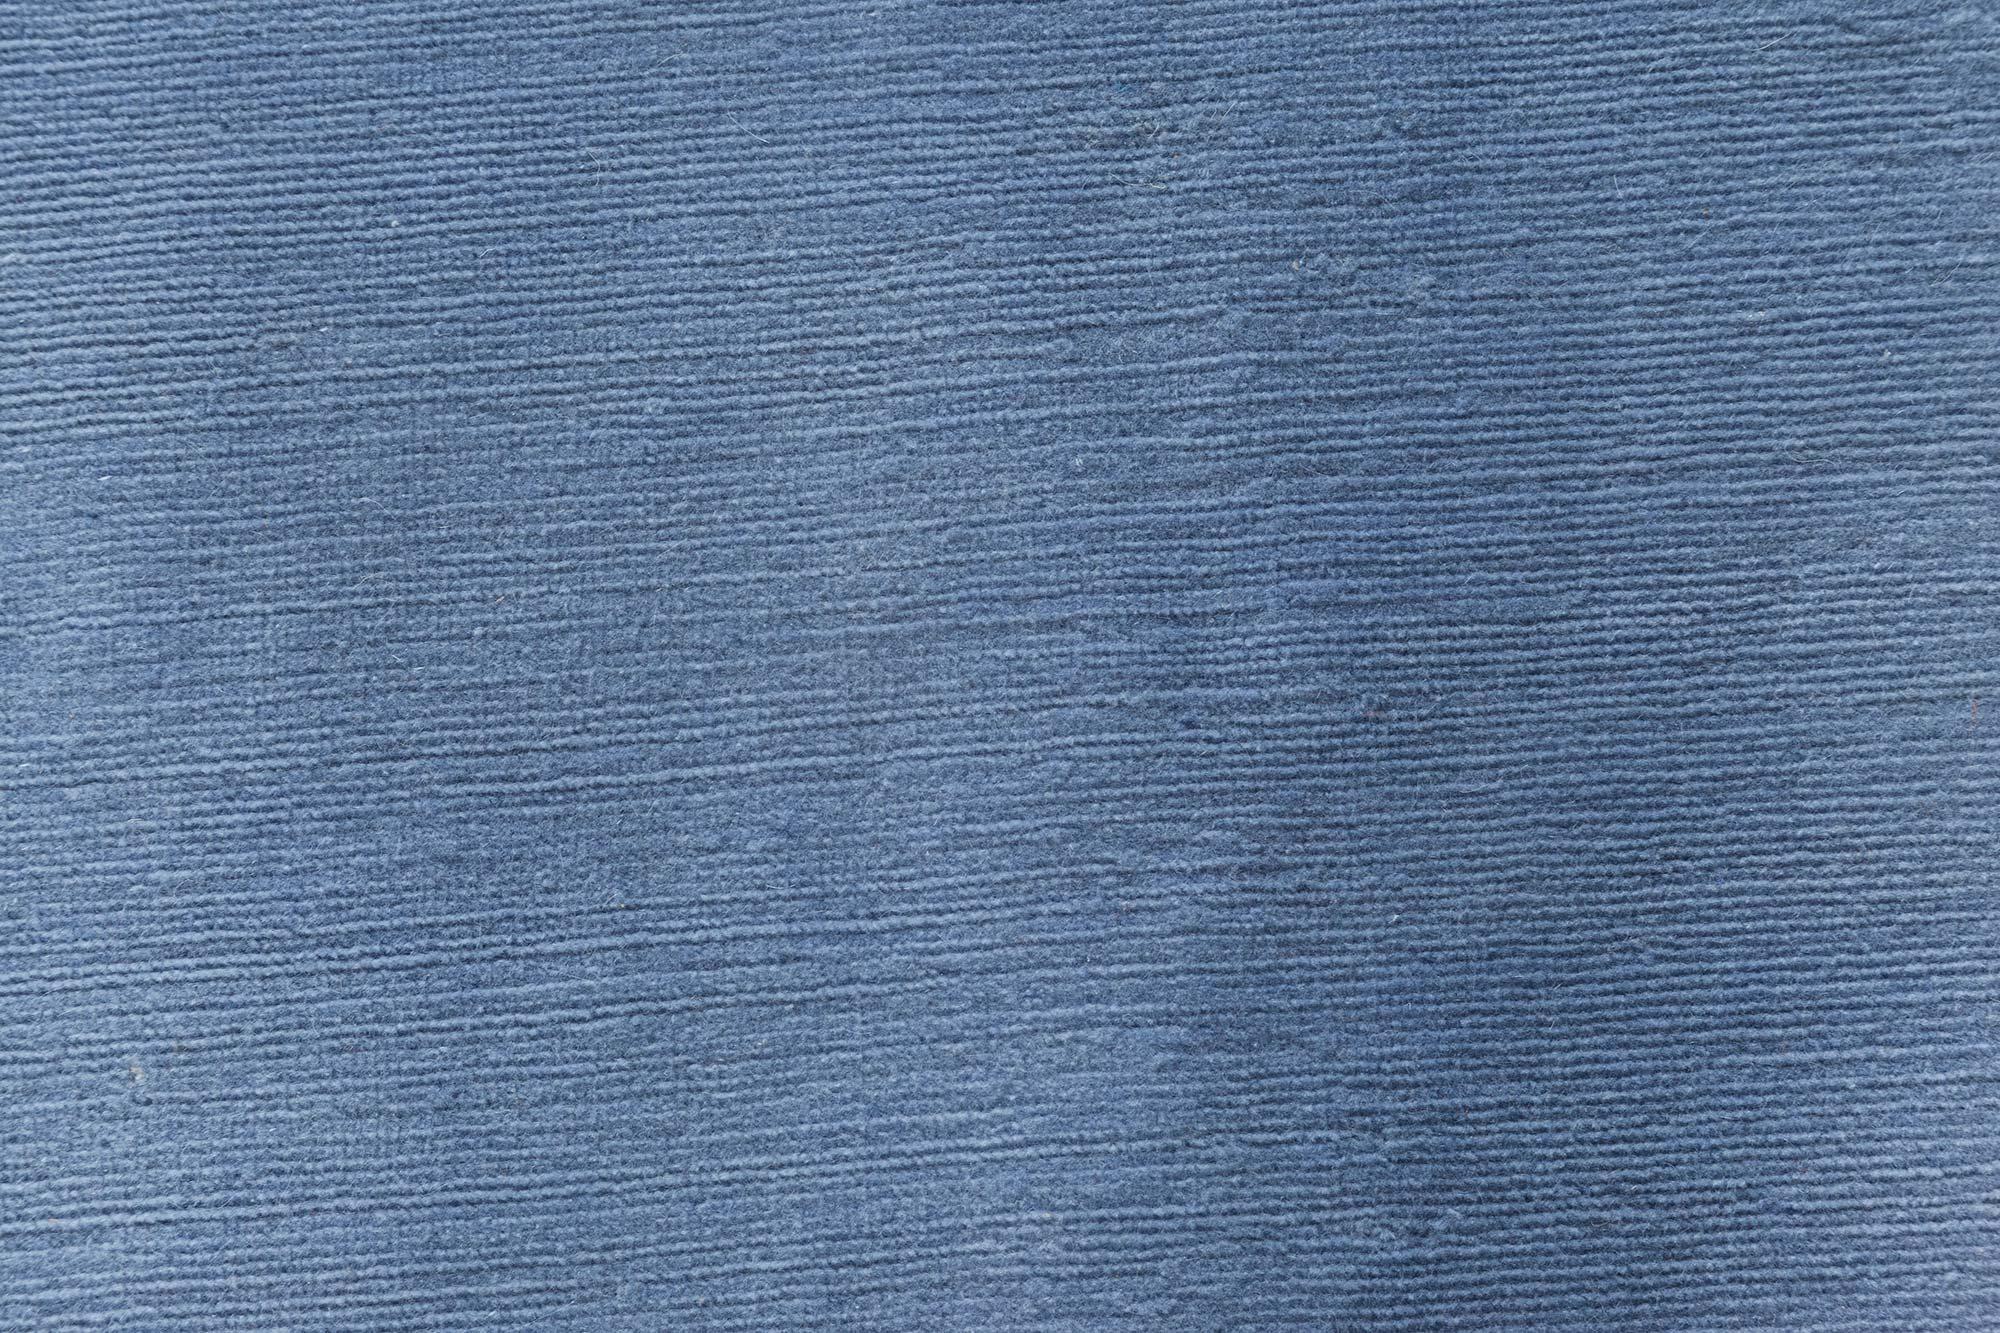 Runder lavendelfarbener handgeknüpfter Mohairteppich von Doris Leslie Blau.
Größe: 11'4